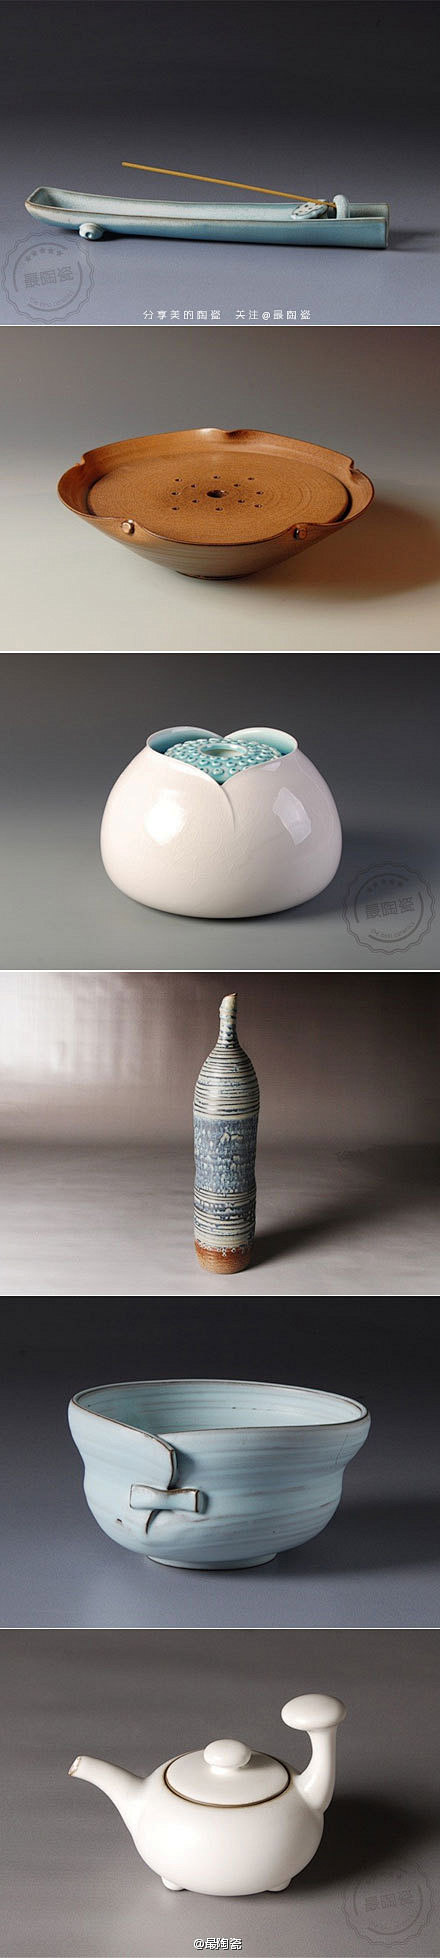 万仟堂陶瓷: 成功的设计是一种寻找平衡的...